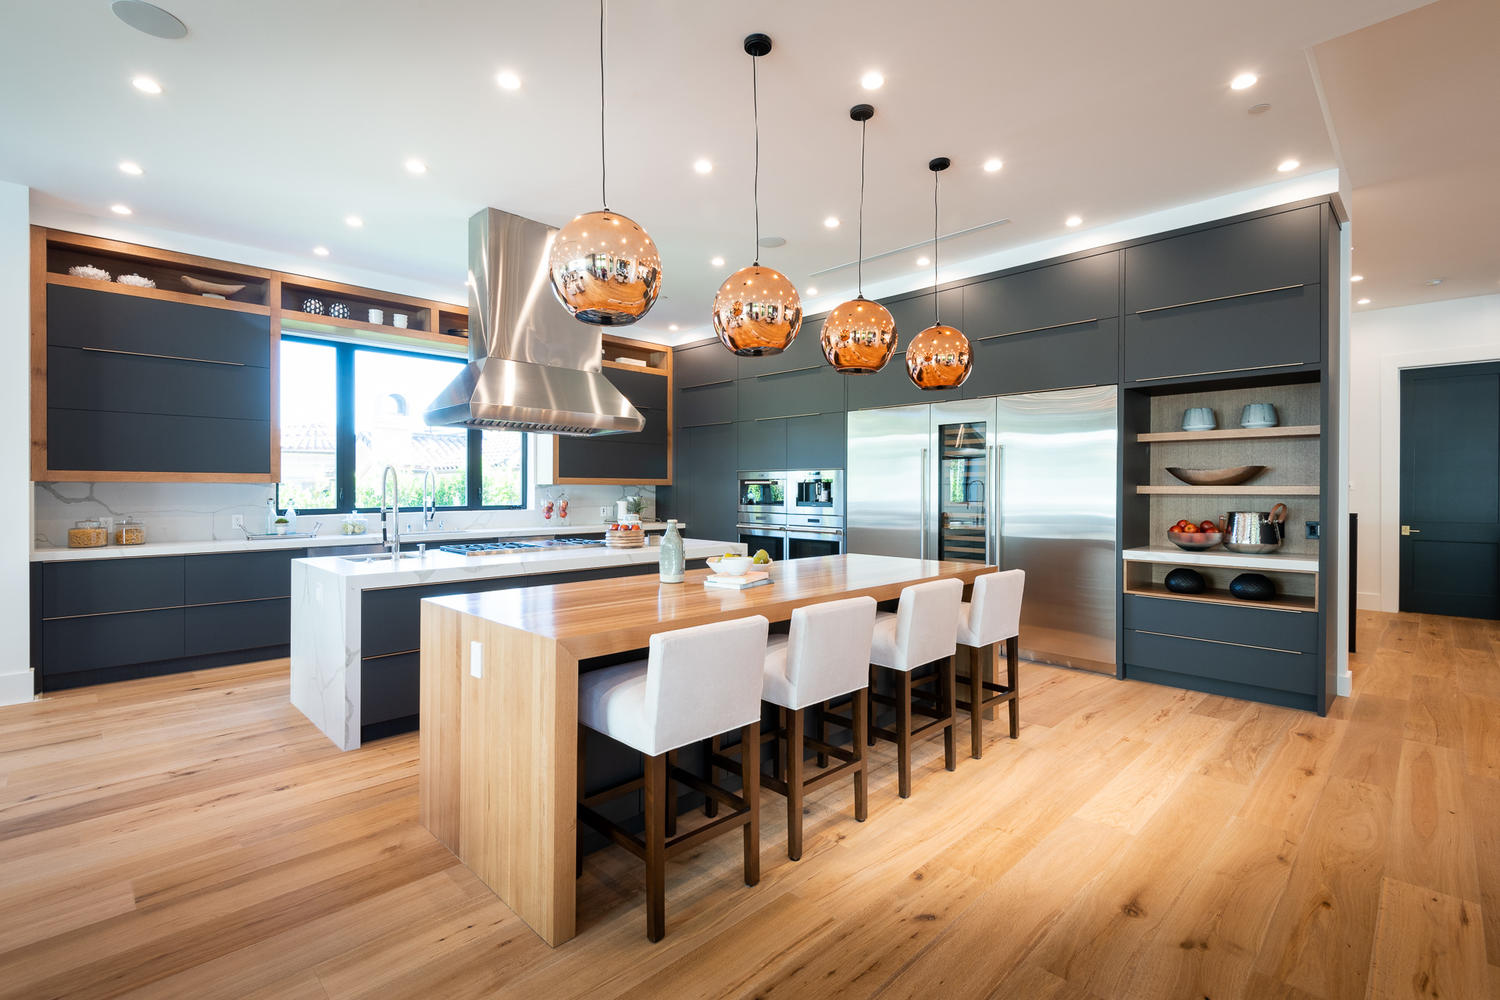 Innovative Kitchen Design Ideas For A Unique Home New Home Designs ...